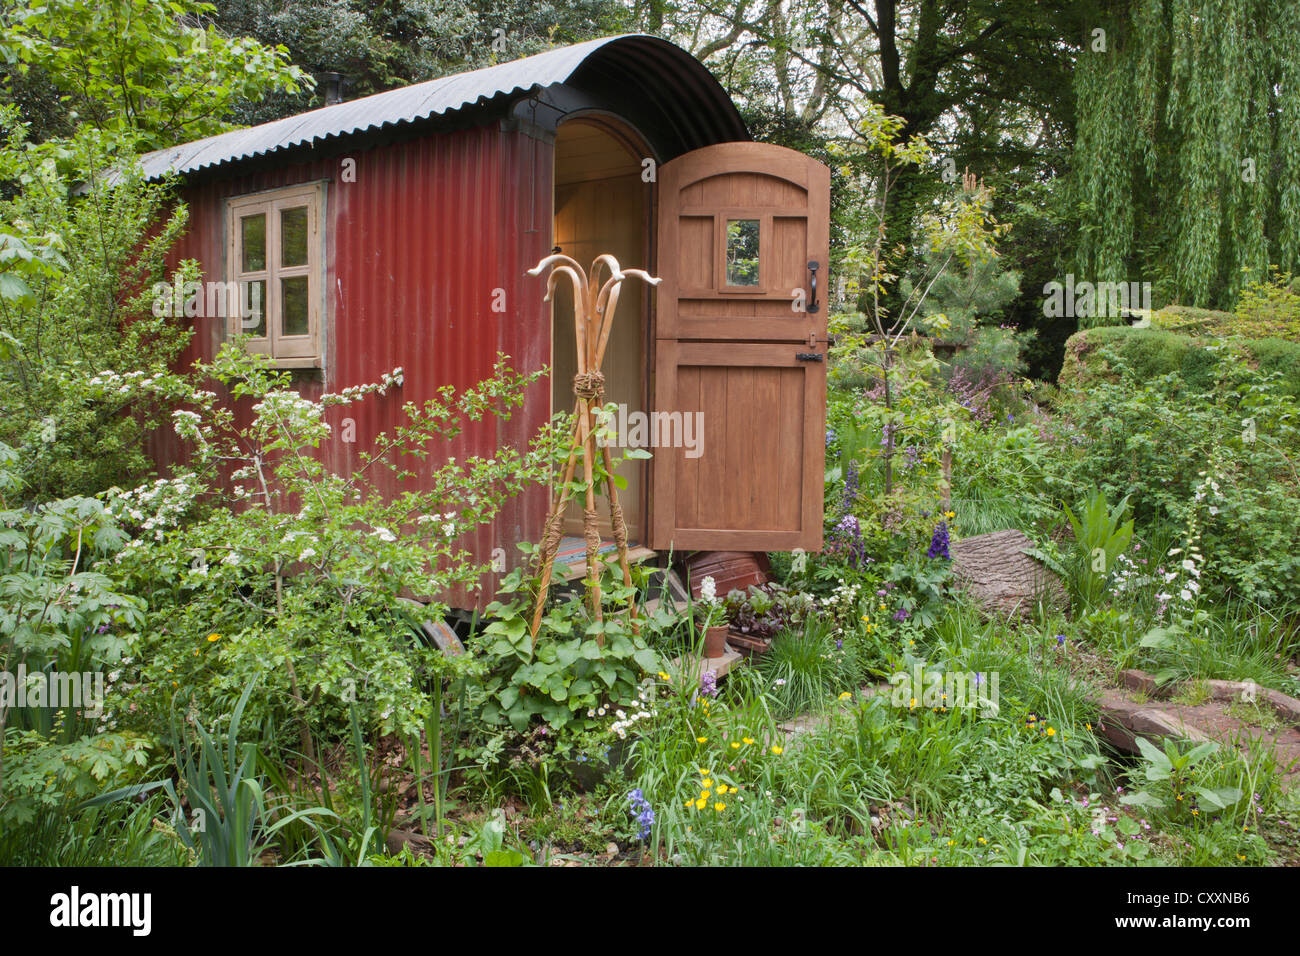 Un jardin écologique durable avec cabane de bergers refuge dans une forêt boisée avec fleurs sauvages printemps été UK chelsea flower show Banque D'Images